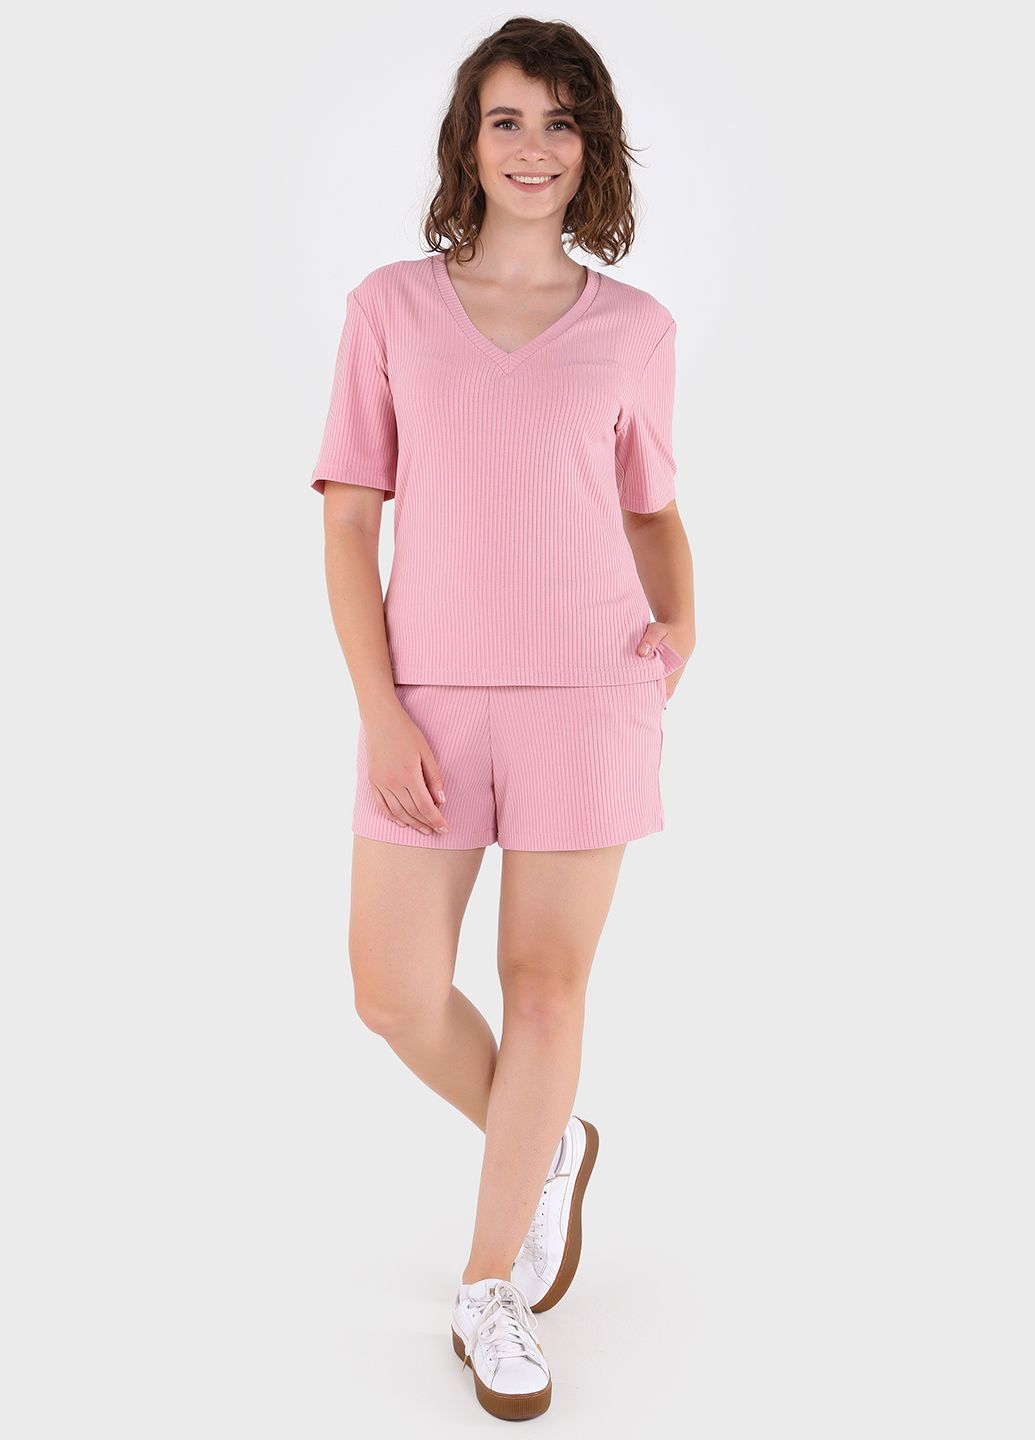 Купить Шорты женские в рубчик Merlini Картейра 300000036 - Розовый, 42-44 в интернет-магазине